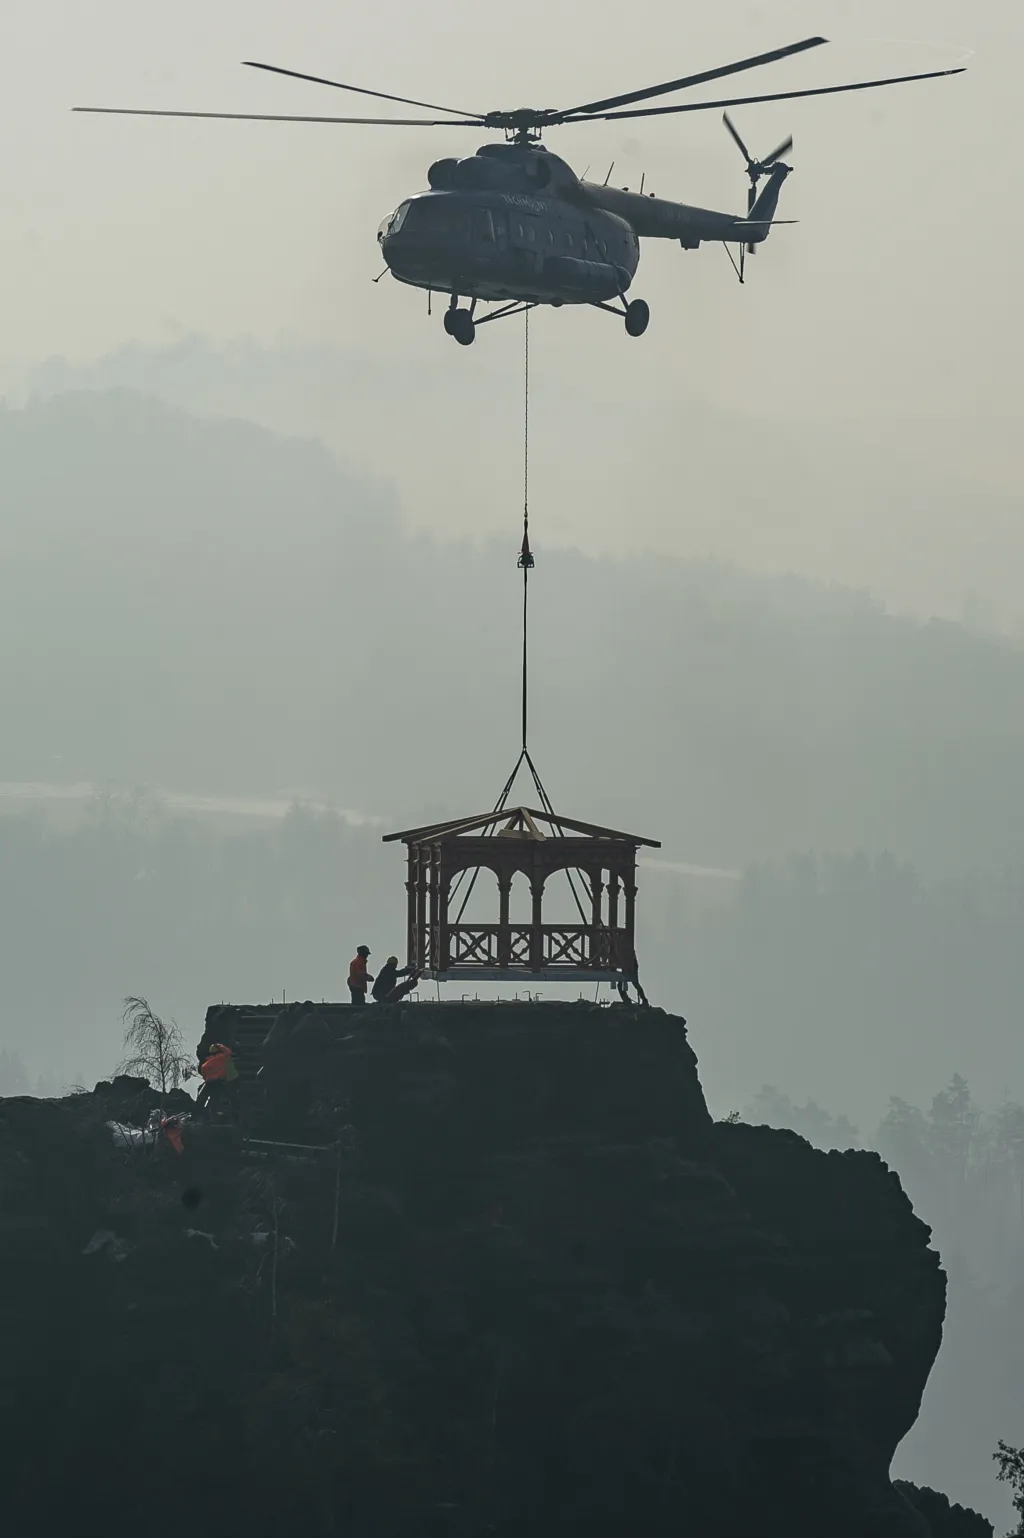 Vrtulník ozdobil romantickou vyhlídku z Mariiny skály v Českém Švýcarsku novým altánem